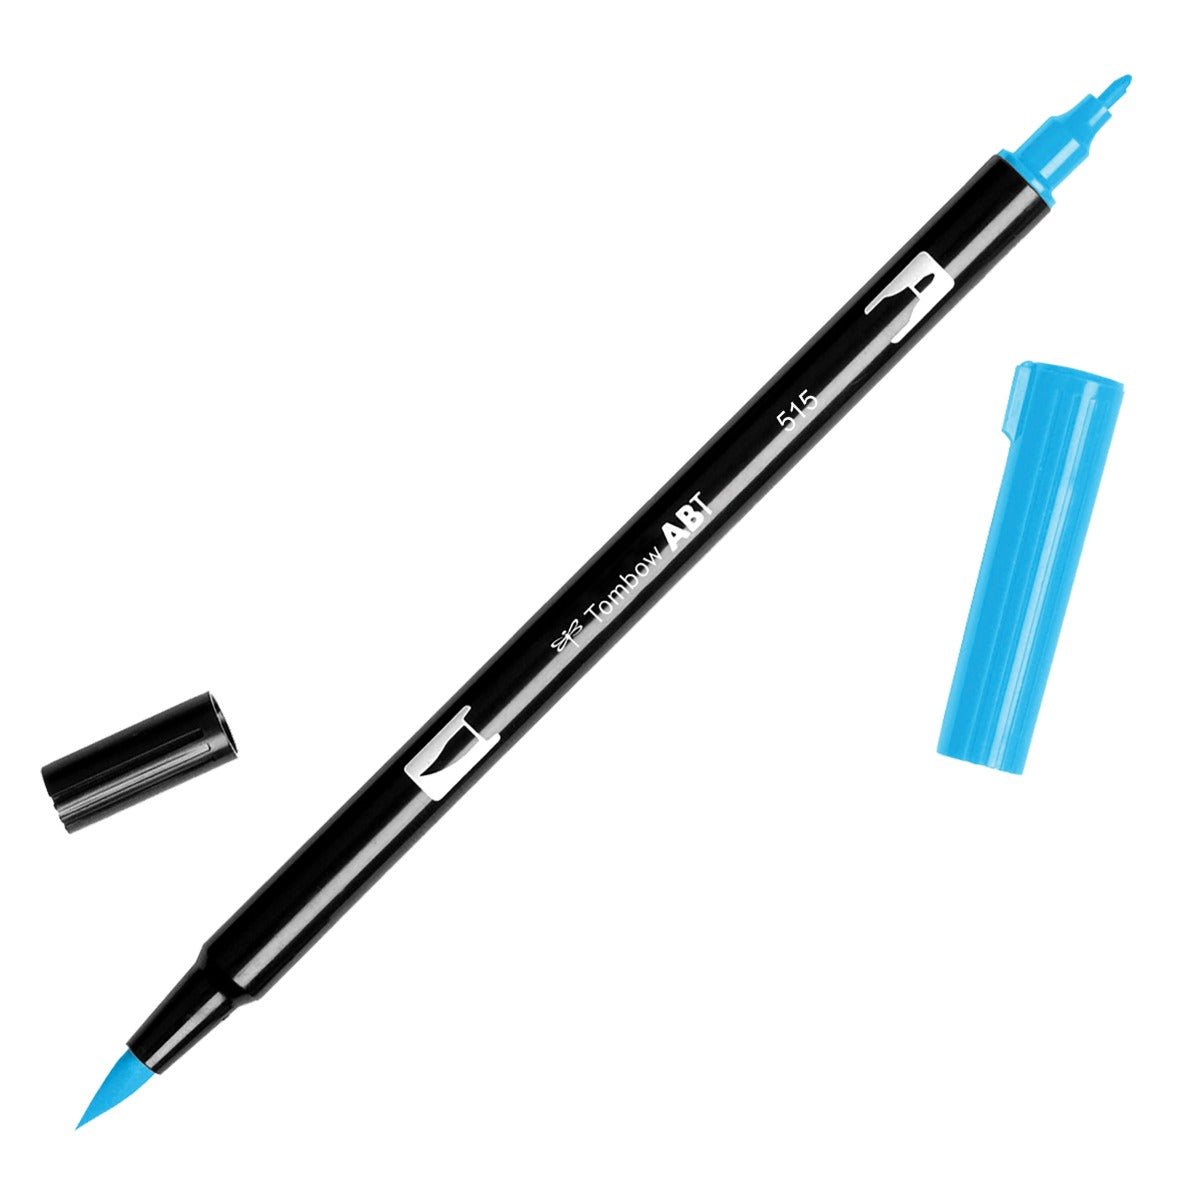 Tombow Dual Brush Pen 515 Light Blue - theartshop.com.au